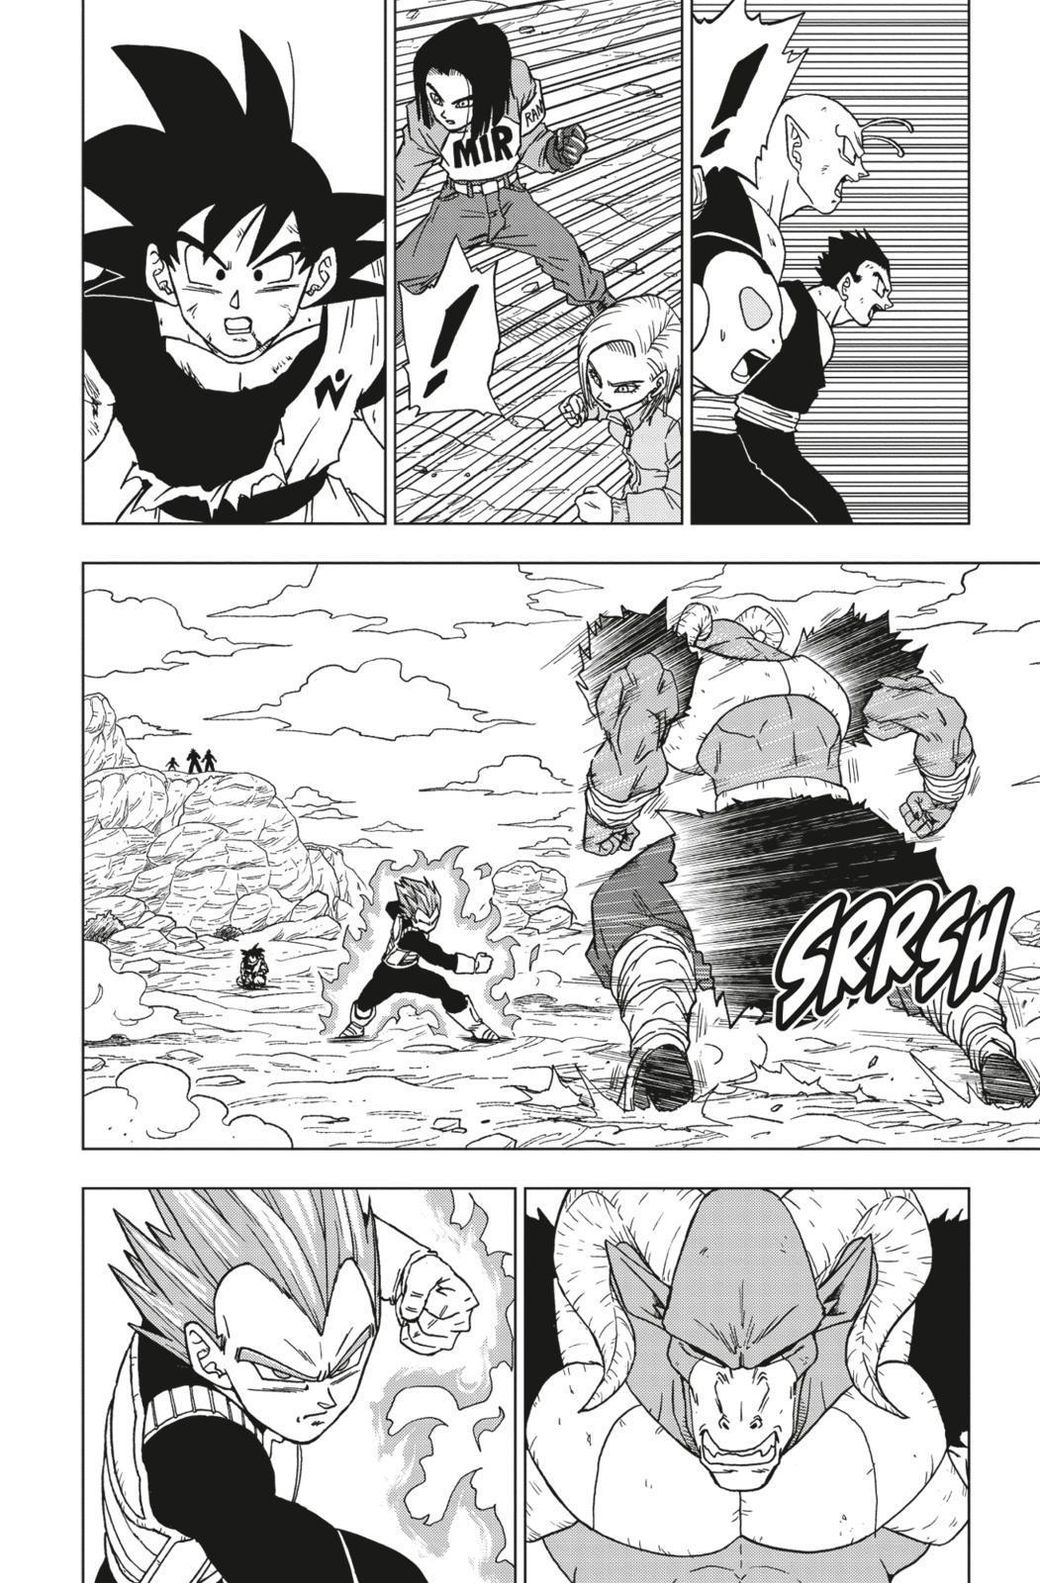 Son-Goku, Galaktische Patrouille Dragon Ball Super Bd.14 | Weltbild.at